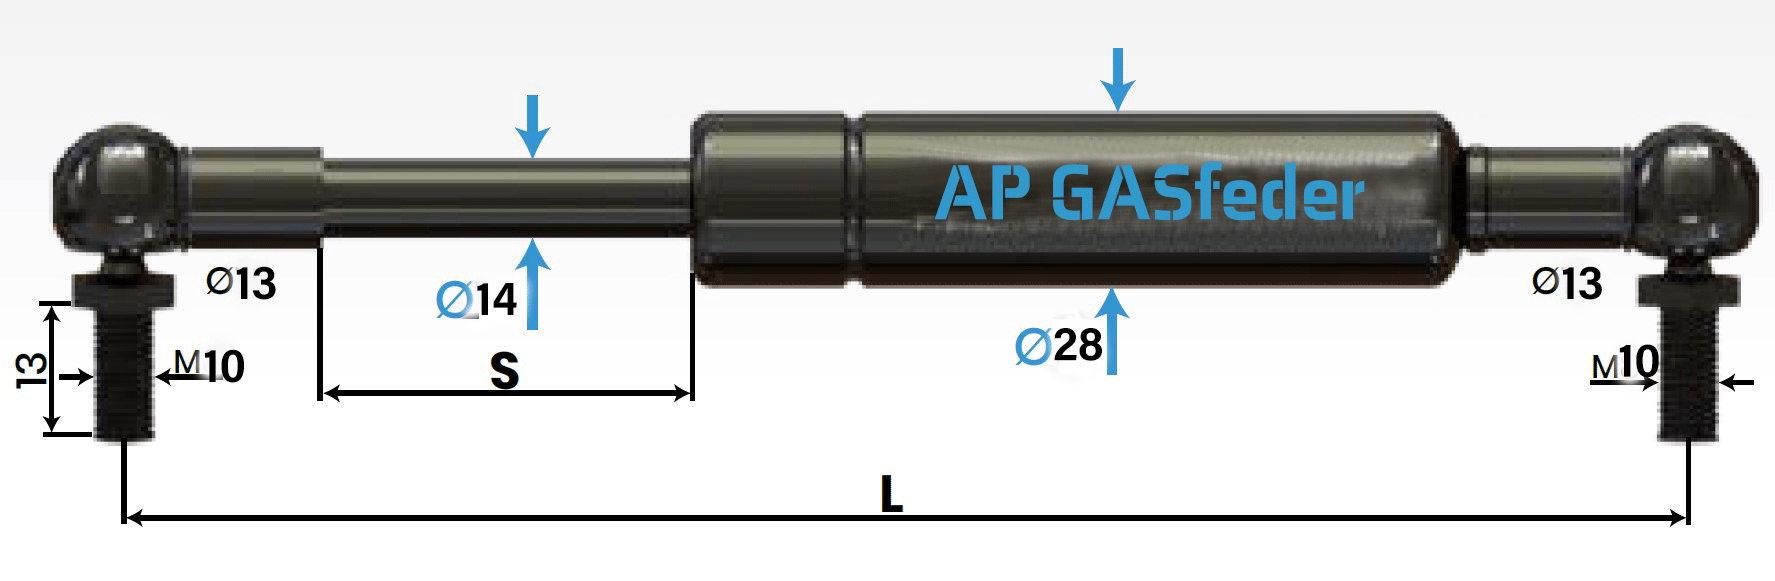 Immagine di AP GASfeder 1000N, 14/28, Hub(S): 500 mm, Länge (L): 1135 mm,  Alternatvie SRST.2394LH